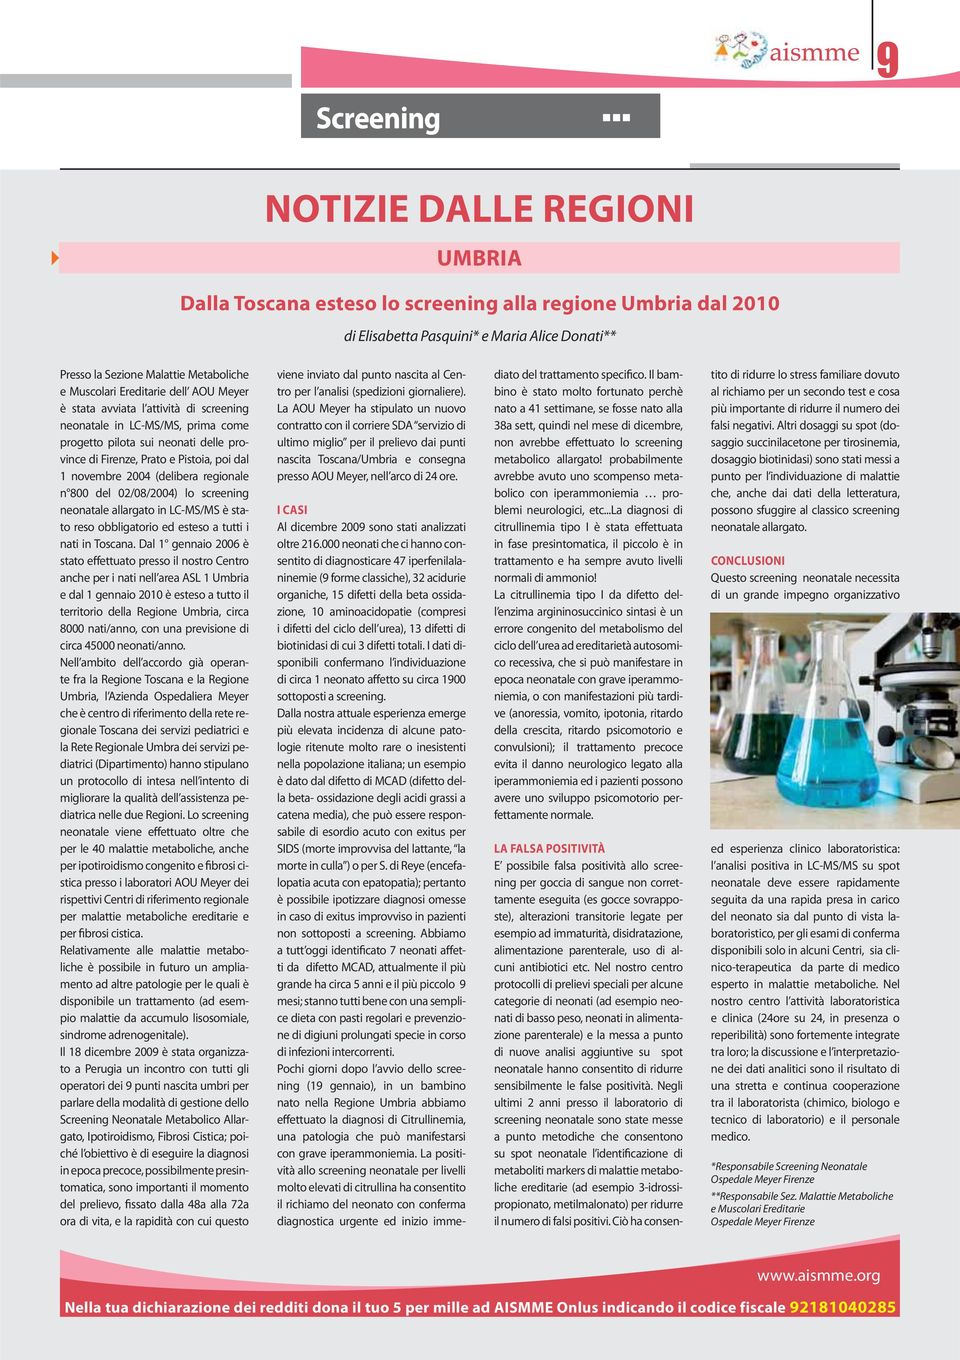 novembre 2004 (delibera regionale n 800 del 02/08/2004) lo screening neonatale allargato in LC-MS/MS è stato reso obbligatorio ed esteso a tutti i nati in Toscana.